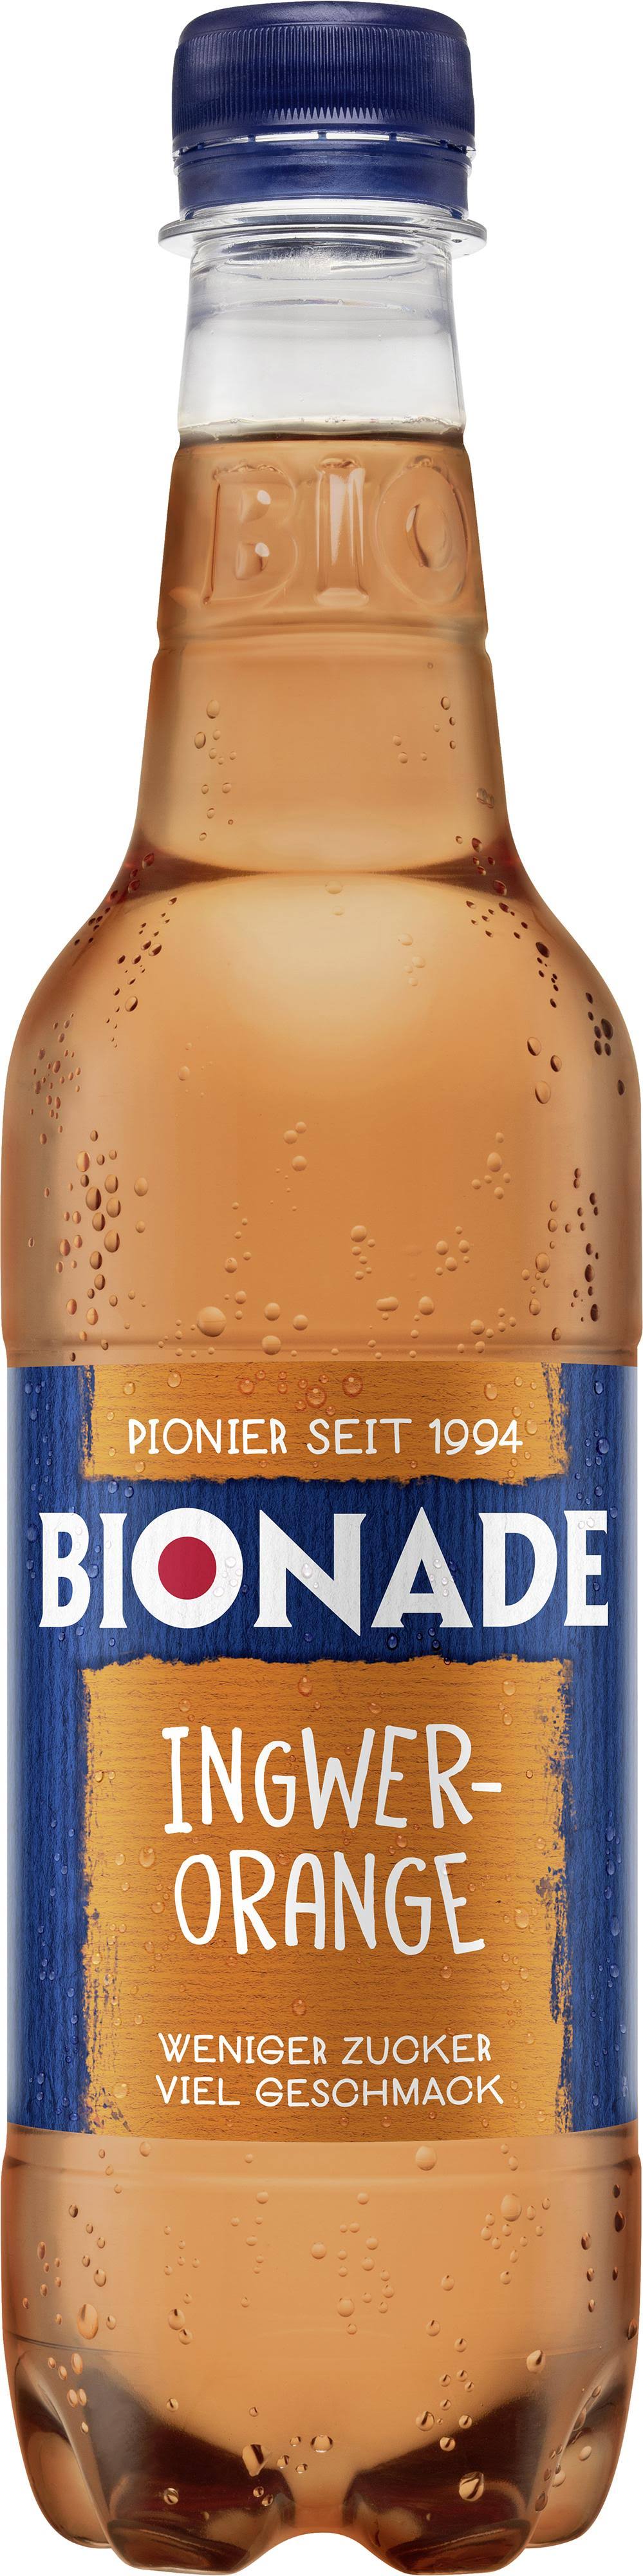 Bionade Ginger-Orange 0.5L Pet Bottle